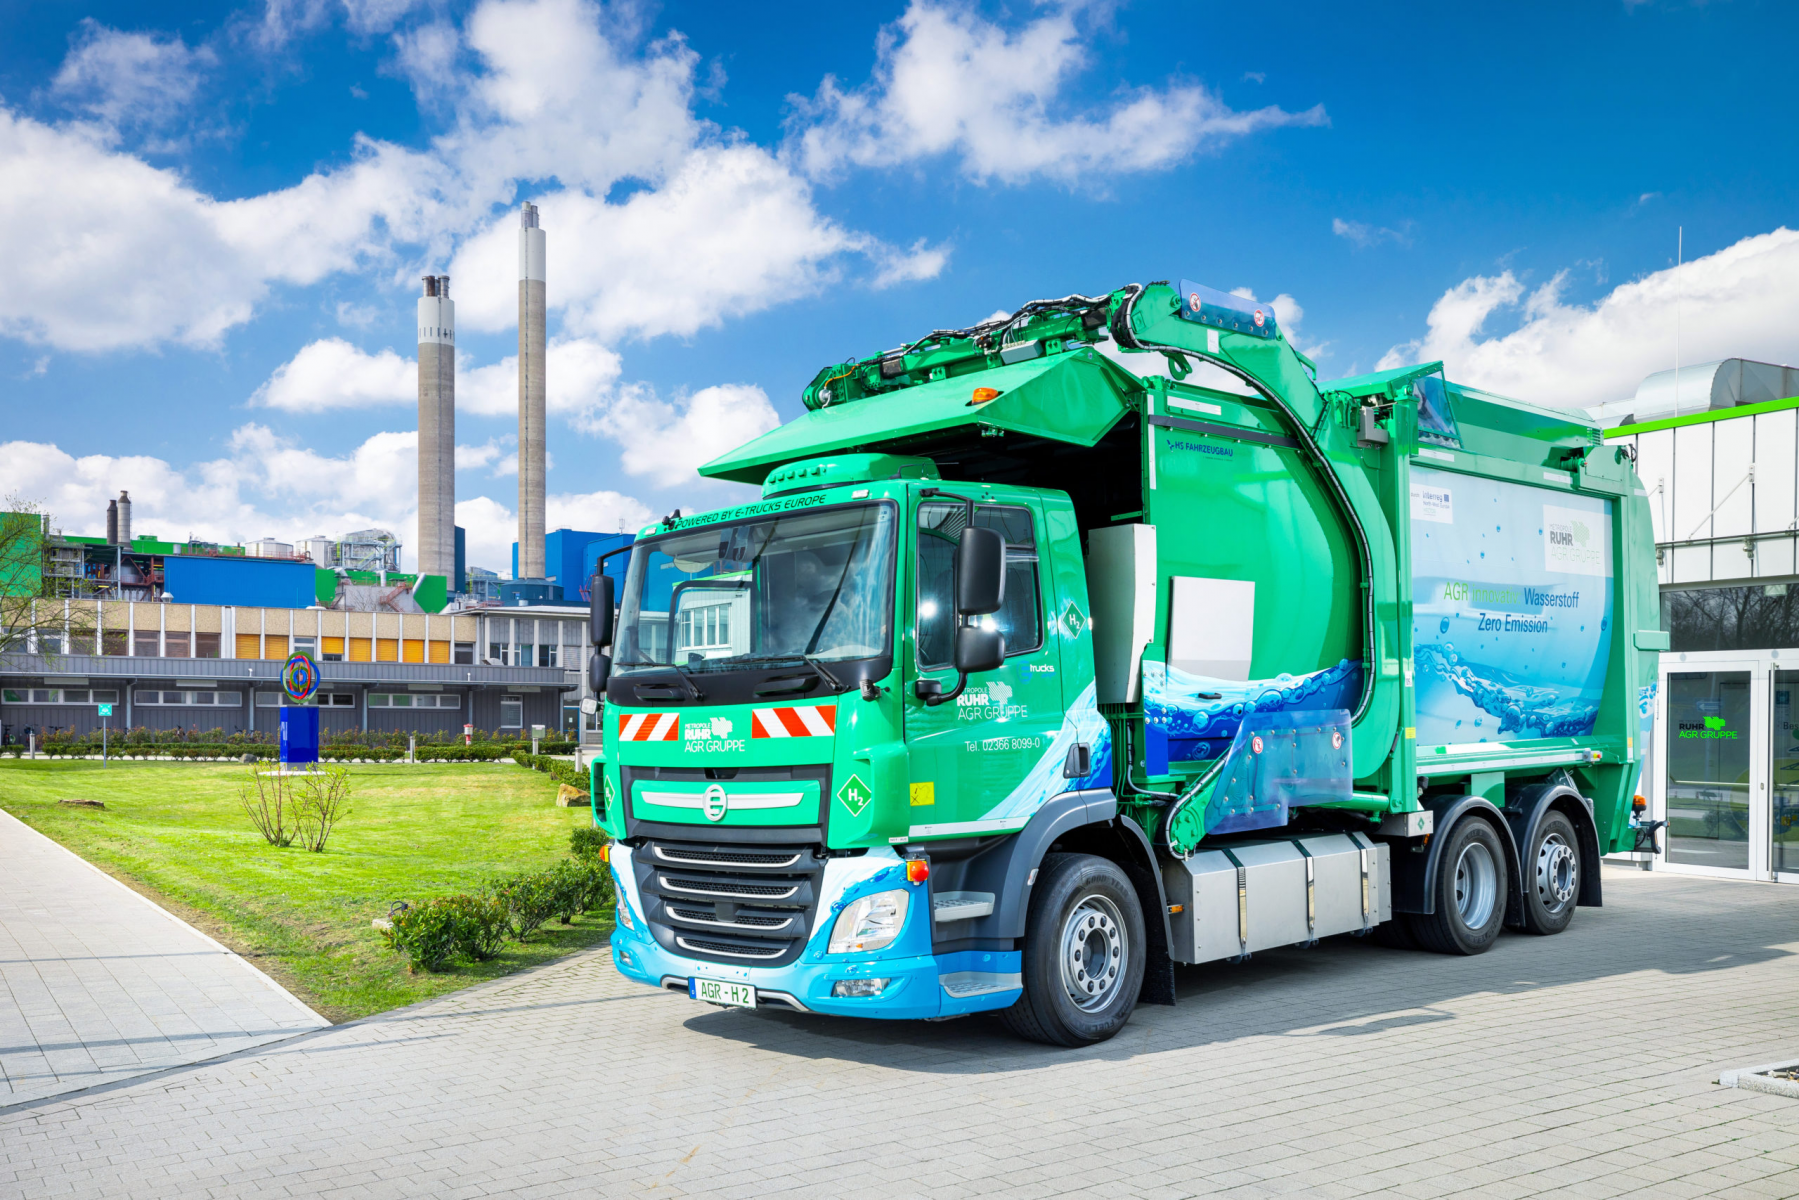 Emissionsfrei durchs Revier: AGR stellt neues Wasserstoff-Abfallsammelfahrzeug vor